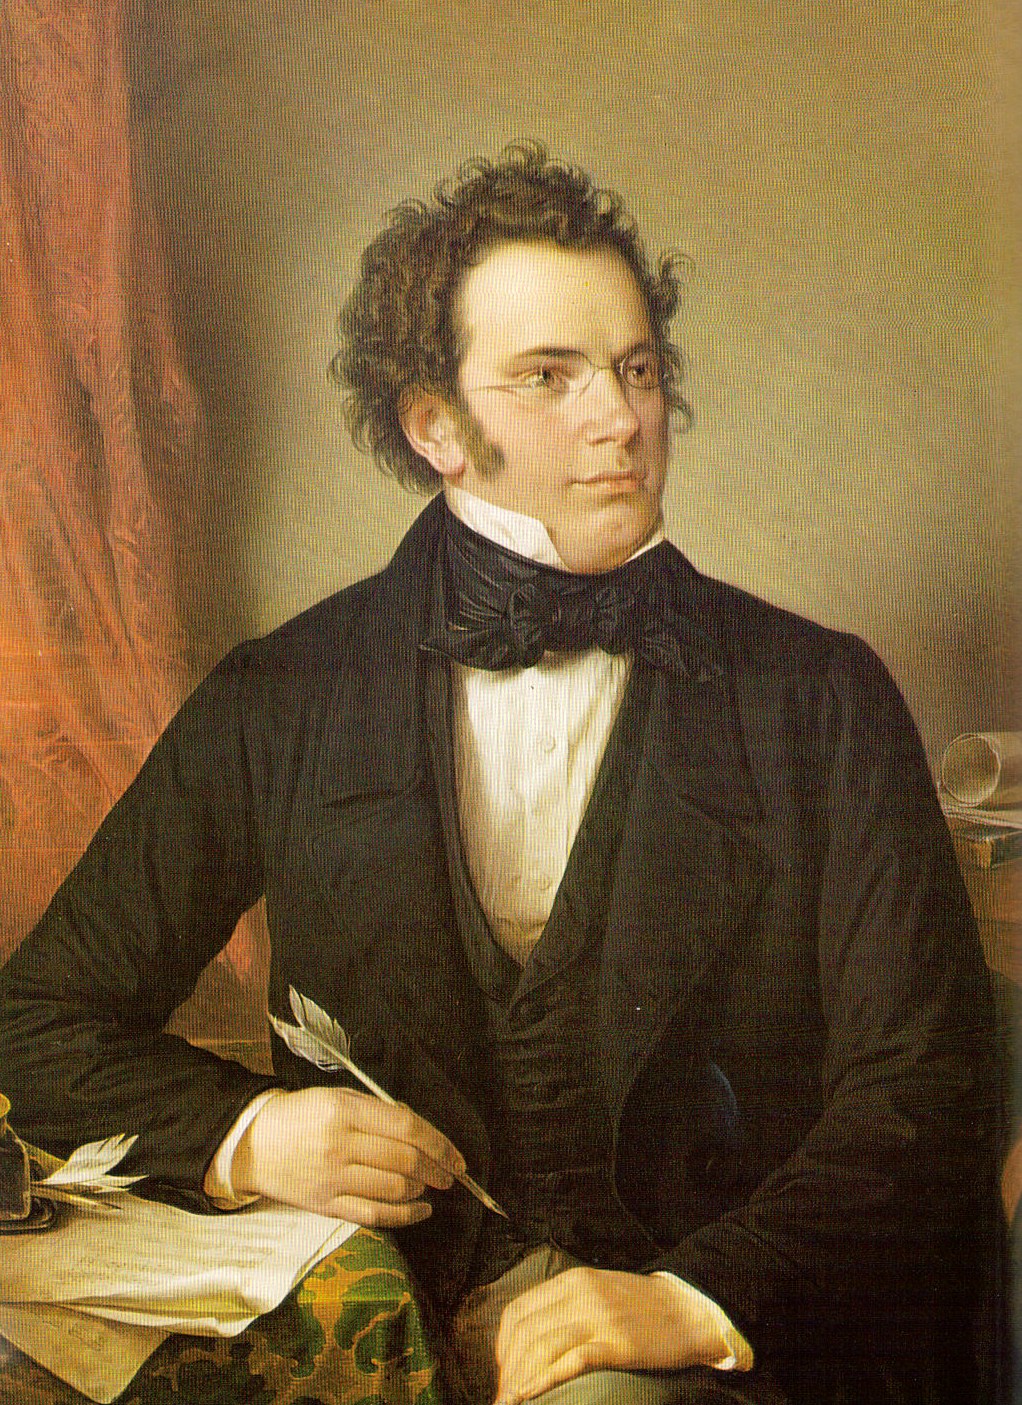 Franz_Schubert_1797-1828.jpg